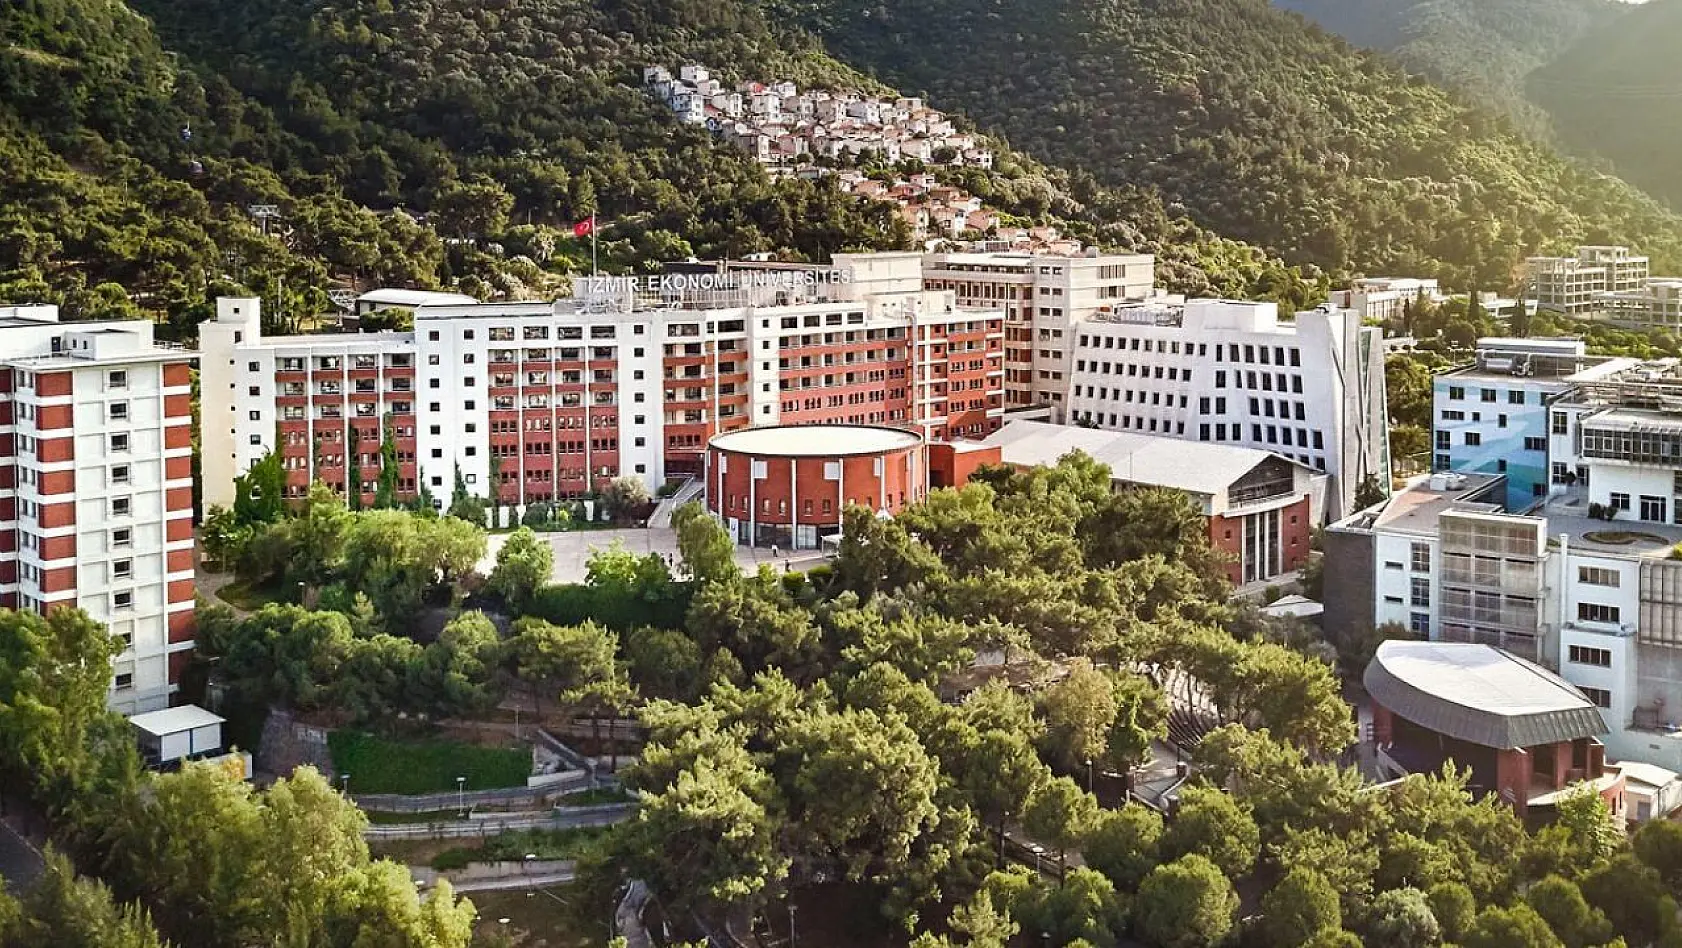 İzmir Ekonomi Üniversitesi tercih sonuçlarında büyük başarı yakaladı